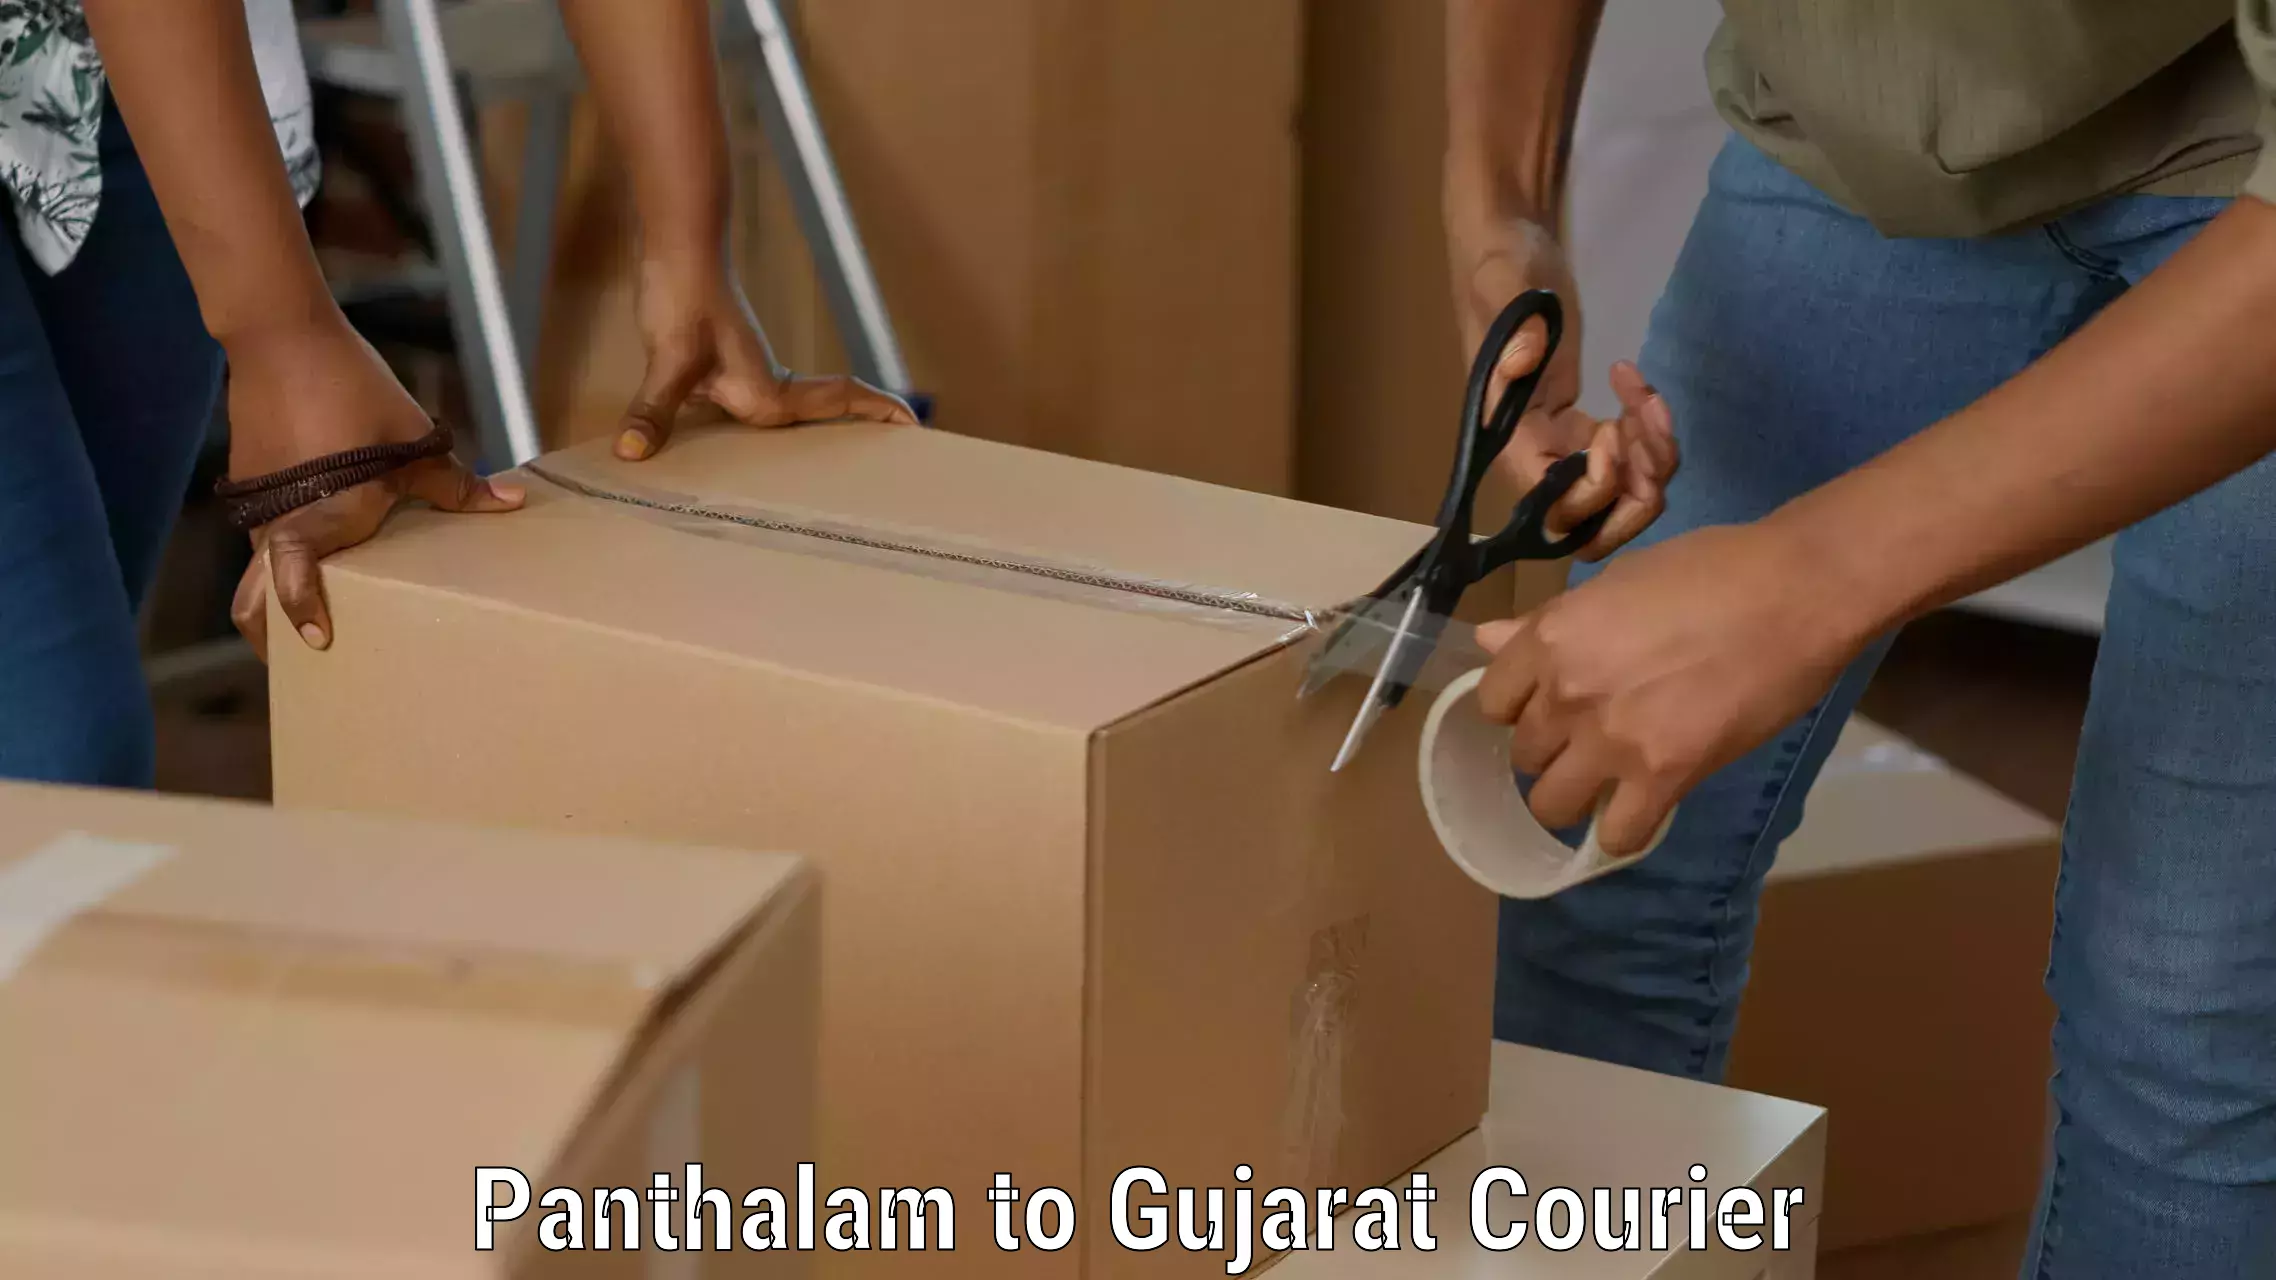 Professional courier handling Panthalam to Patan Gujarat